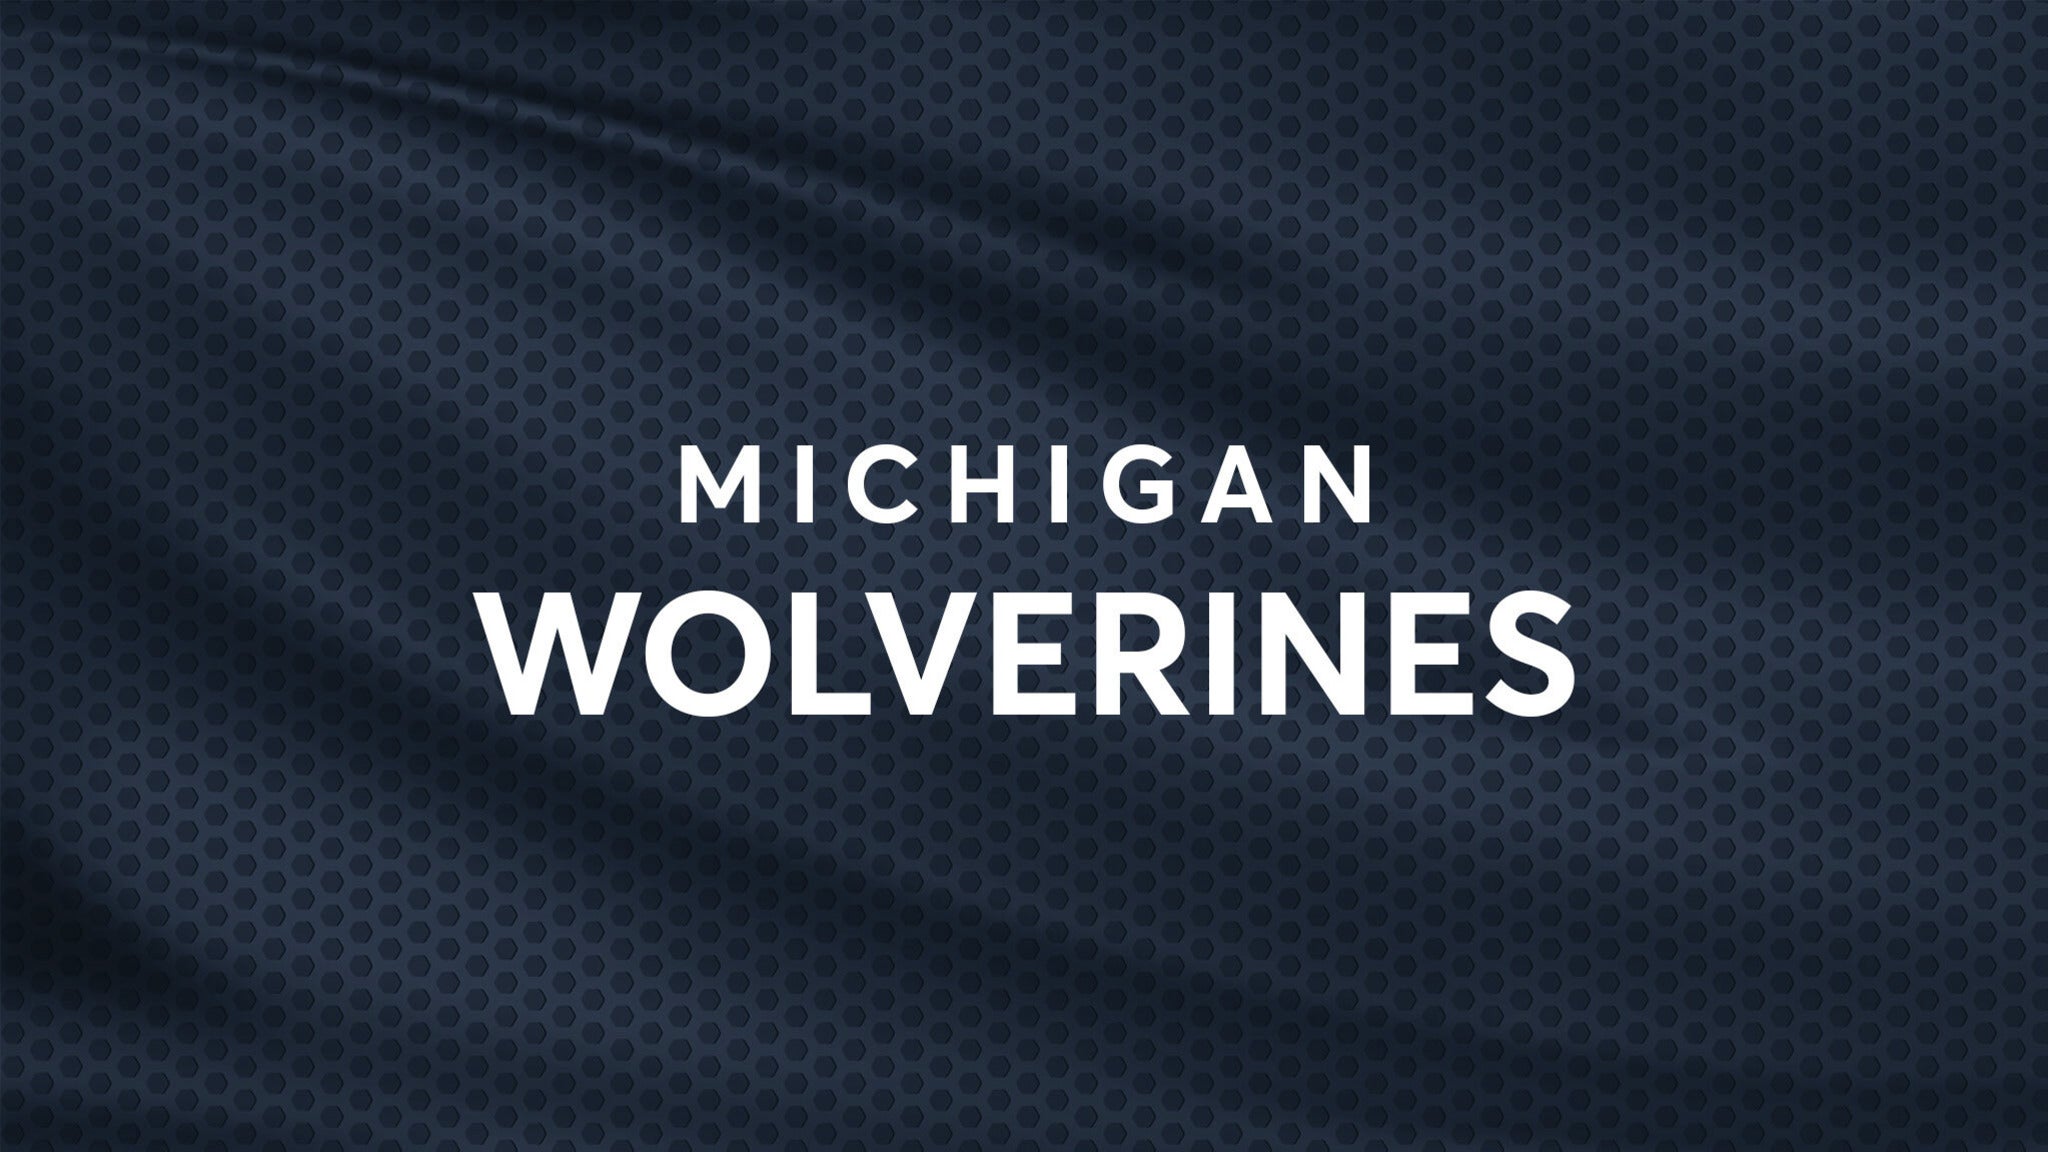 Michigan Wolverines Baseball vs. Michigan State Spartans Baseball